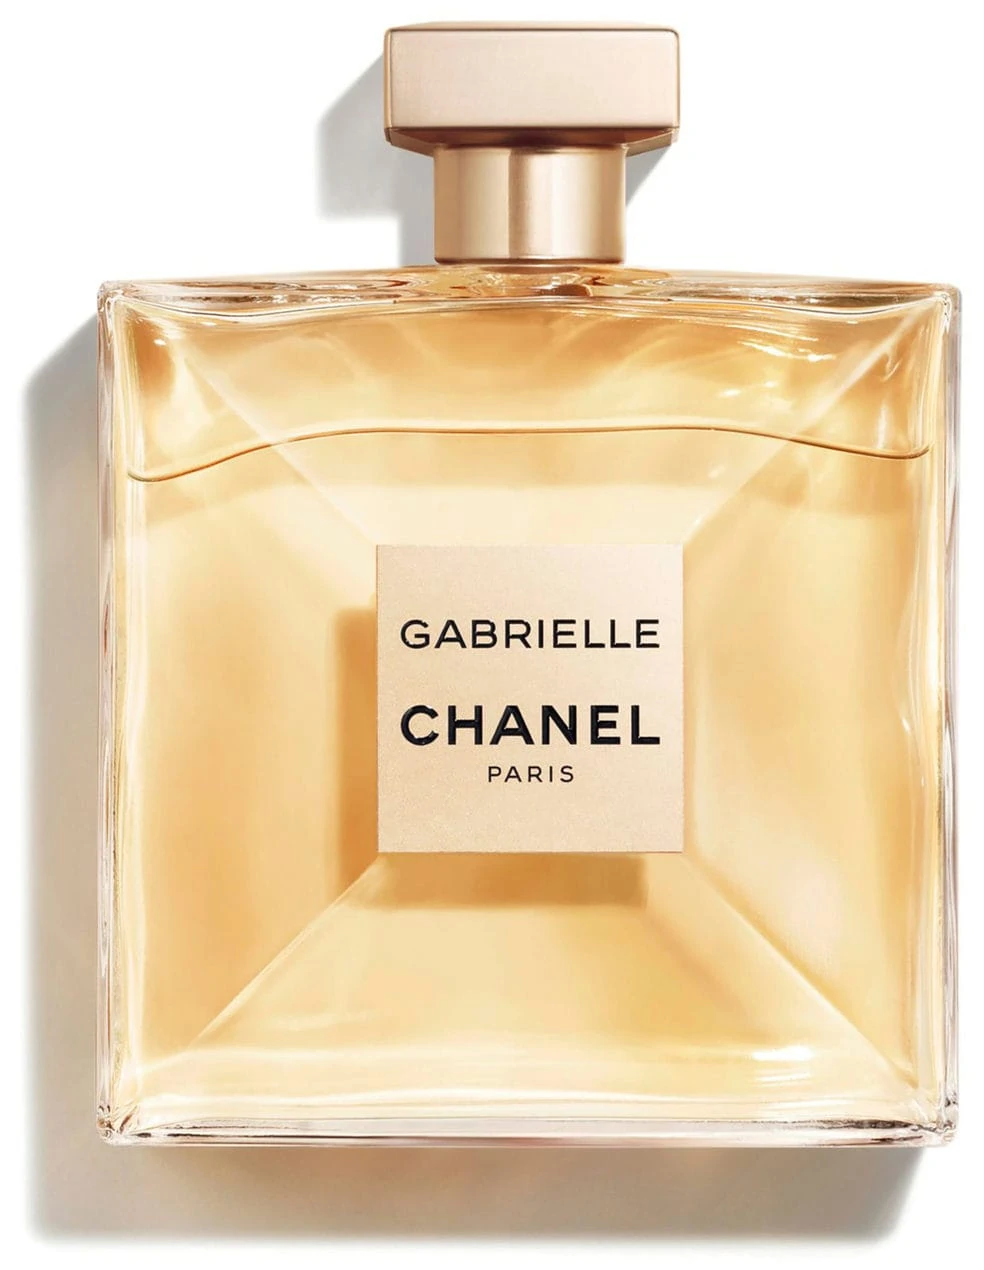 Chanel Gabrielle Chanel Essence